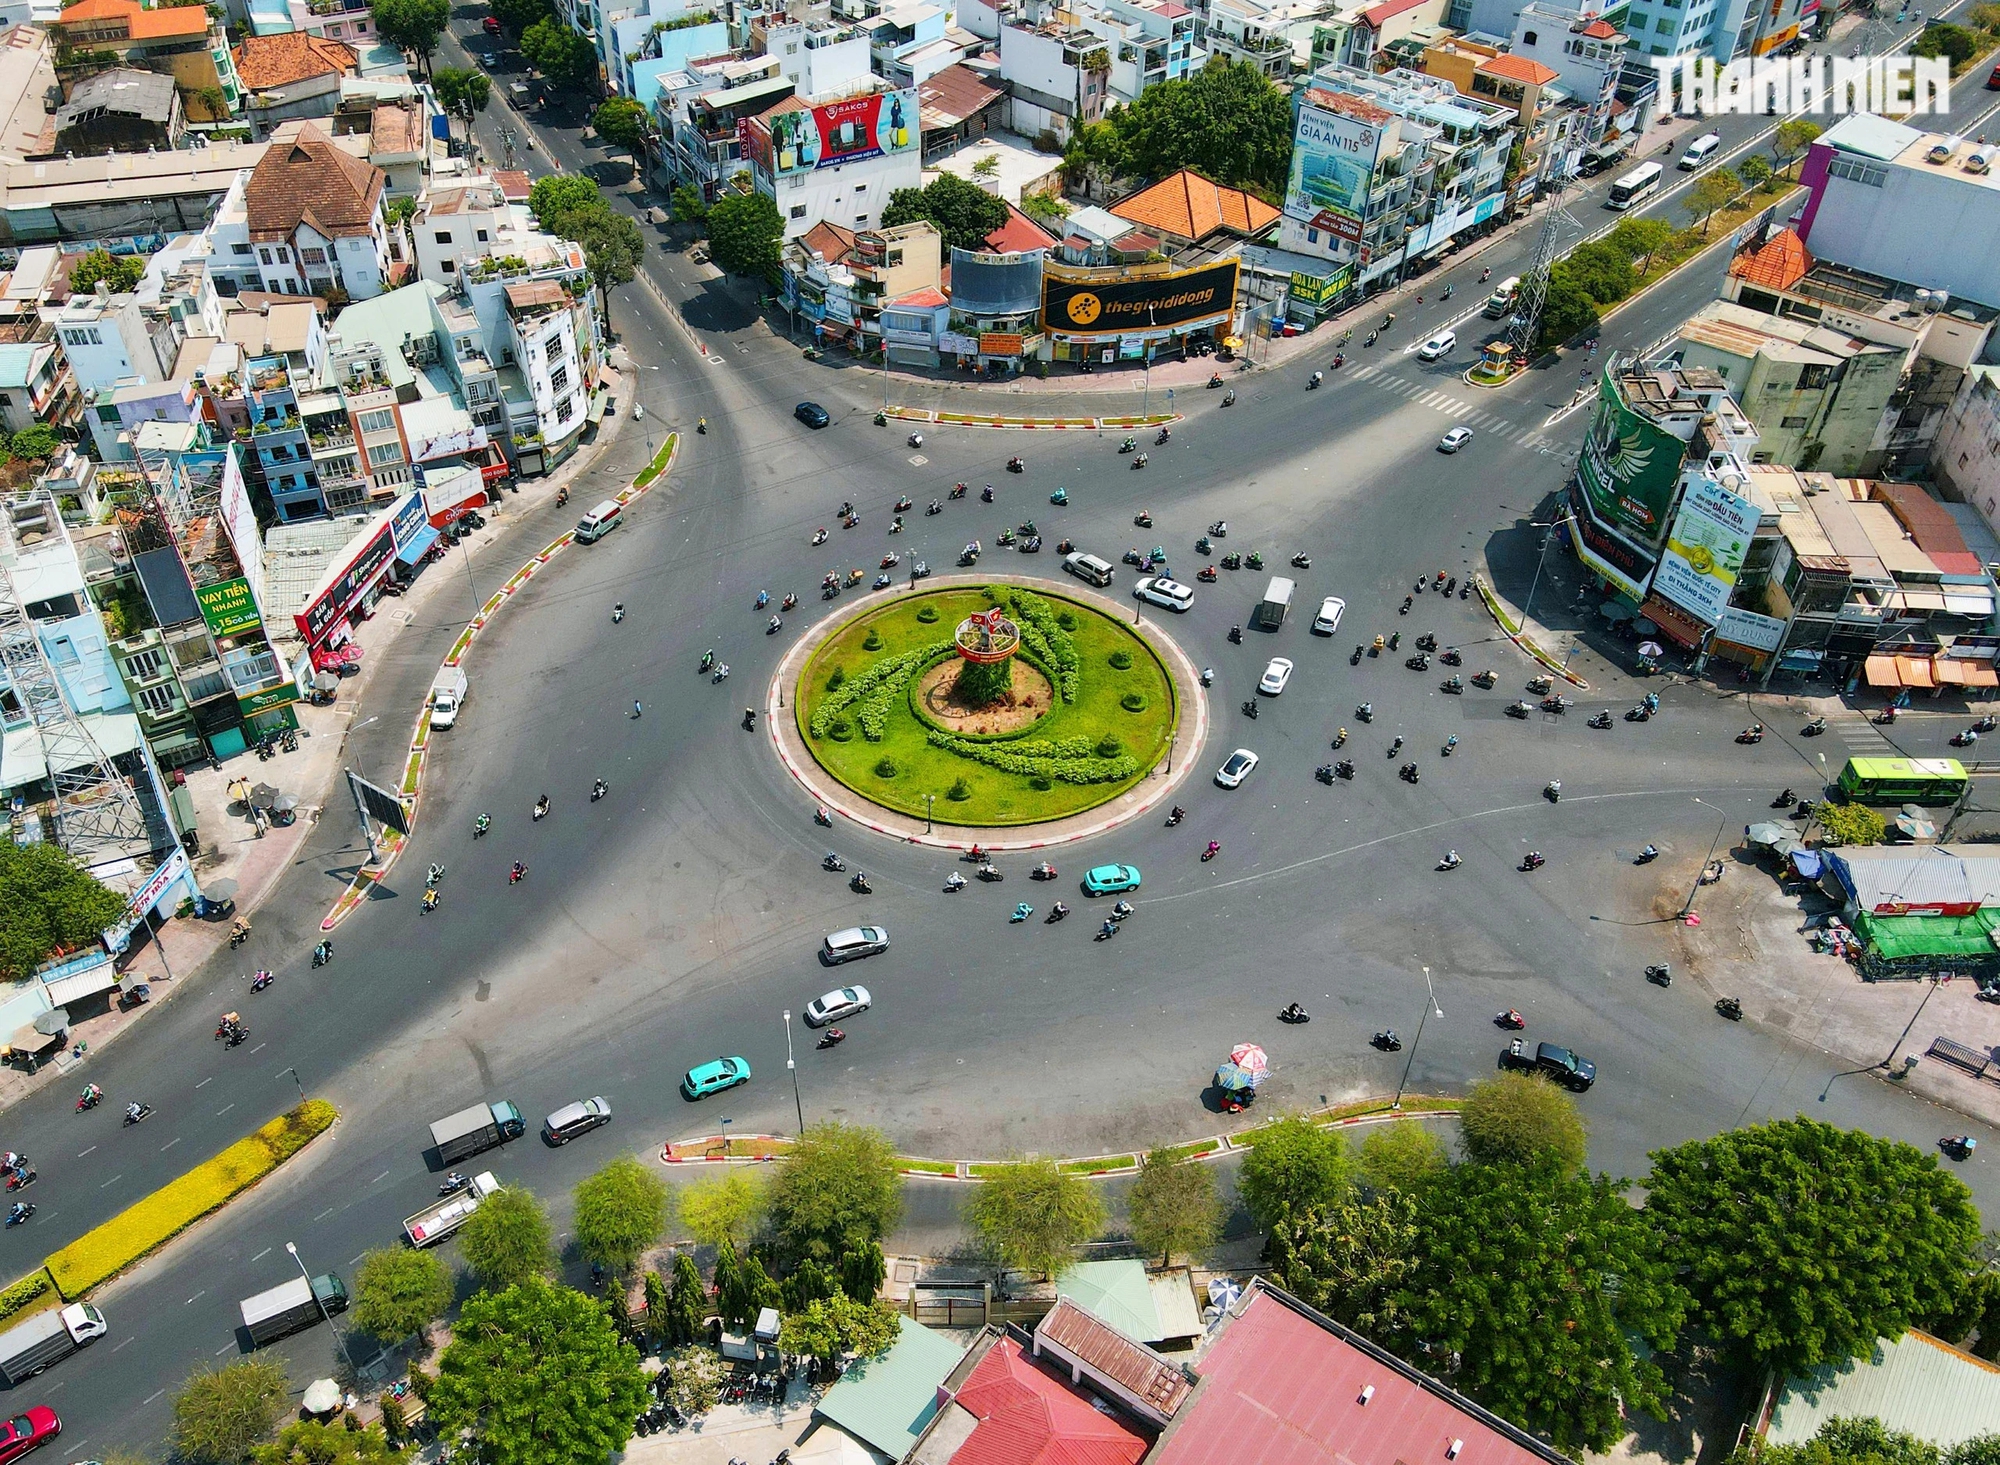 Vòng xoay Phú Lâm, nơi giao nhau của các tuyến đường: Hồng Bàng, Kinh Dương Vương, Bà Hom, Tân Hòa Đông, Nguyễn Văn Luông